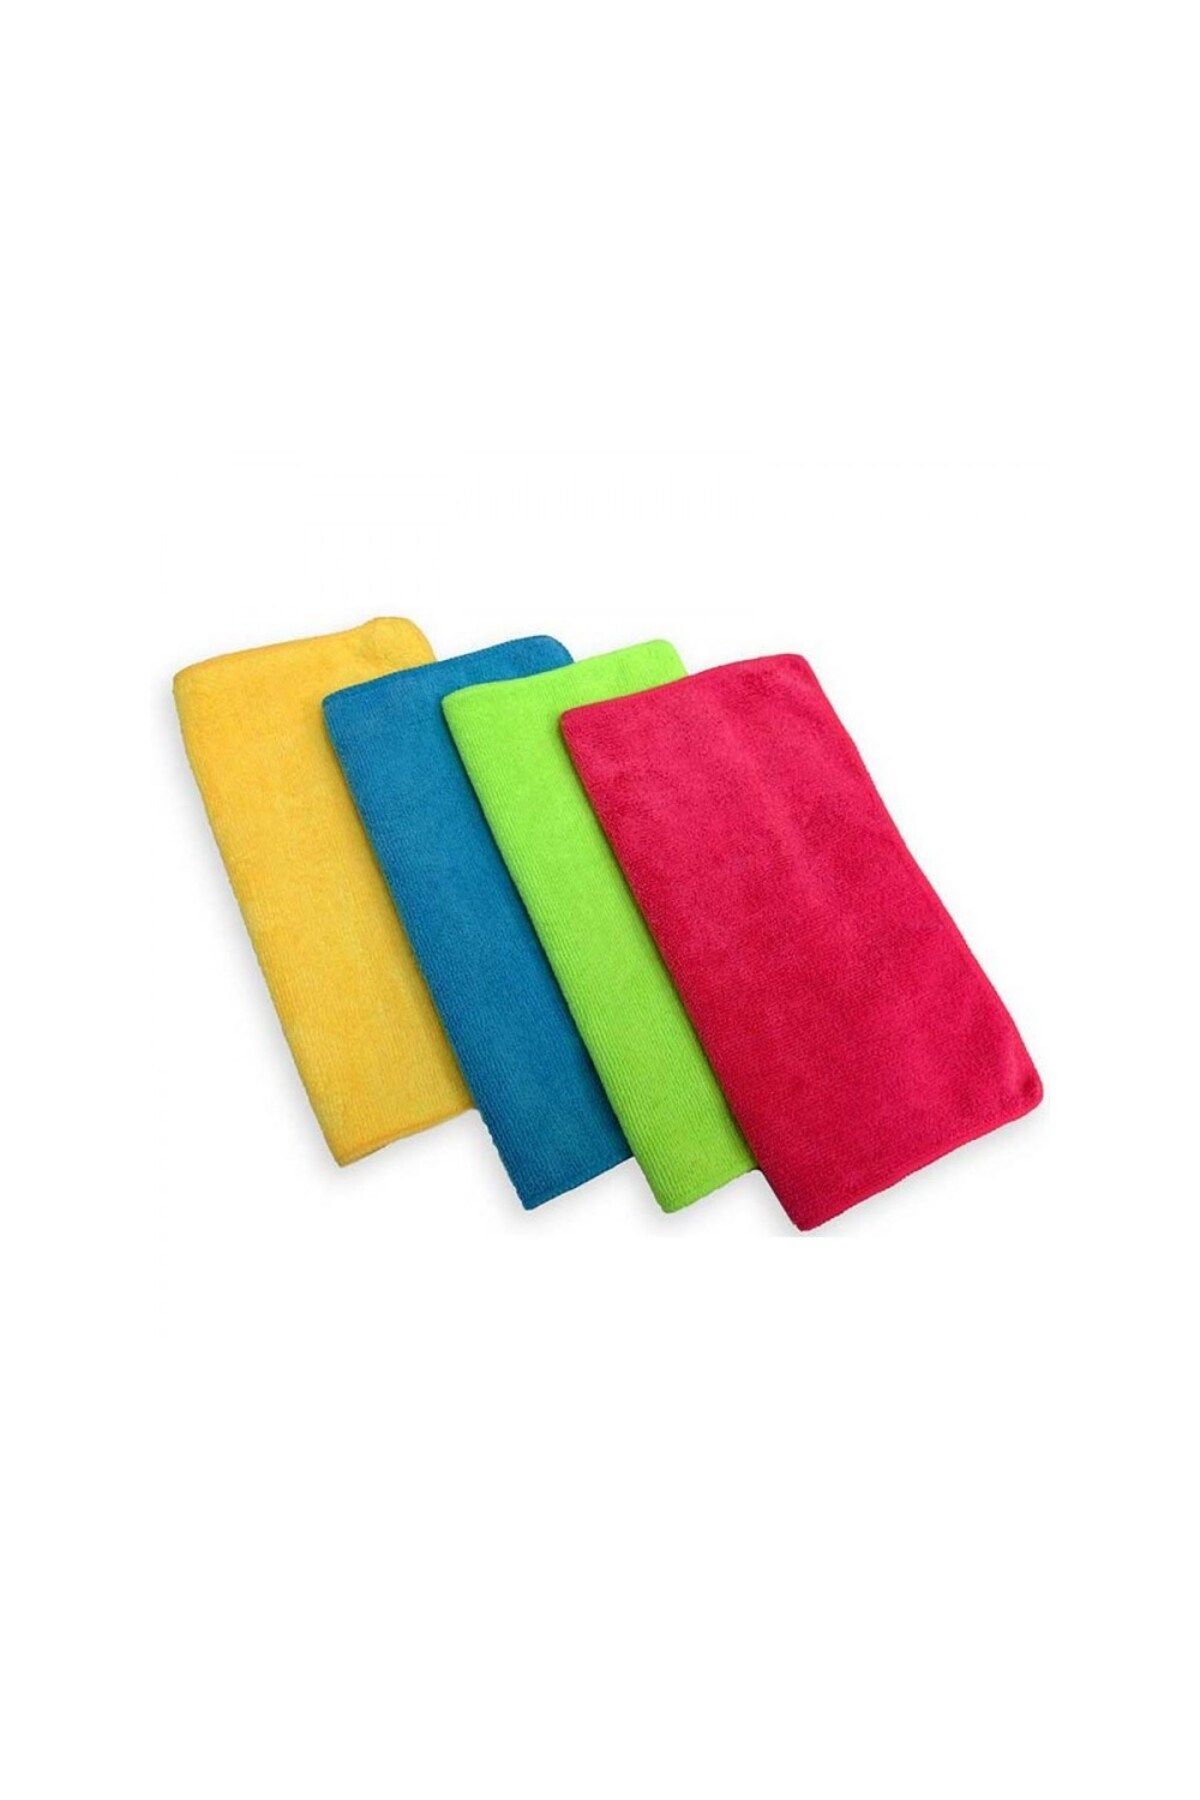 Rulopak 4 Adet Mikrofiber Temizlik Bezi 40*40 Ebat (Kırmızı-Sarı-Yeşil-Mavi)